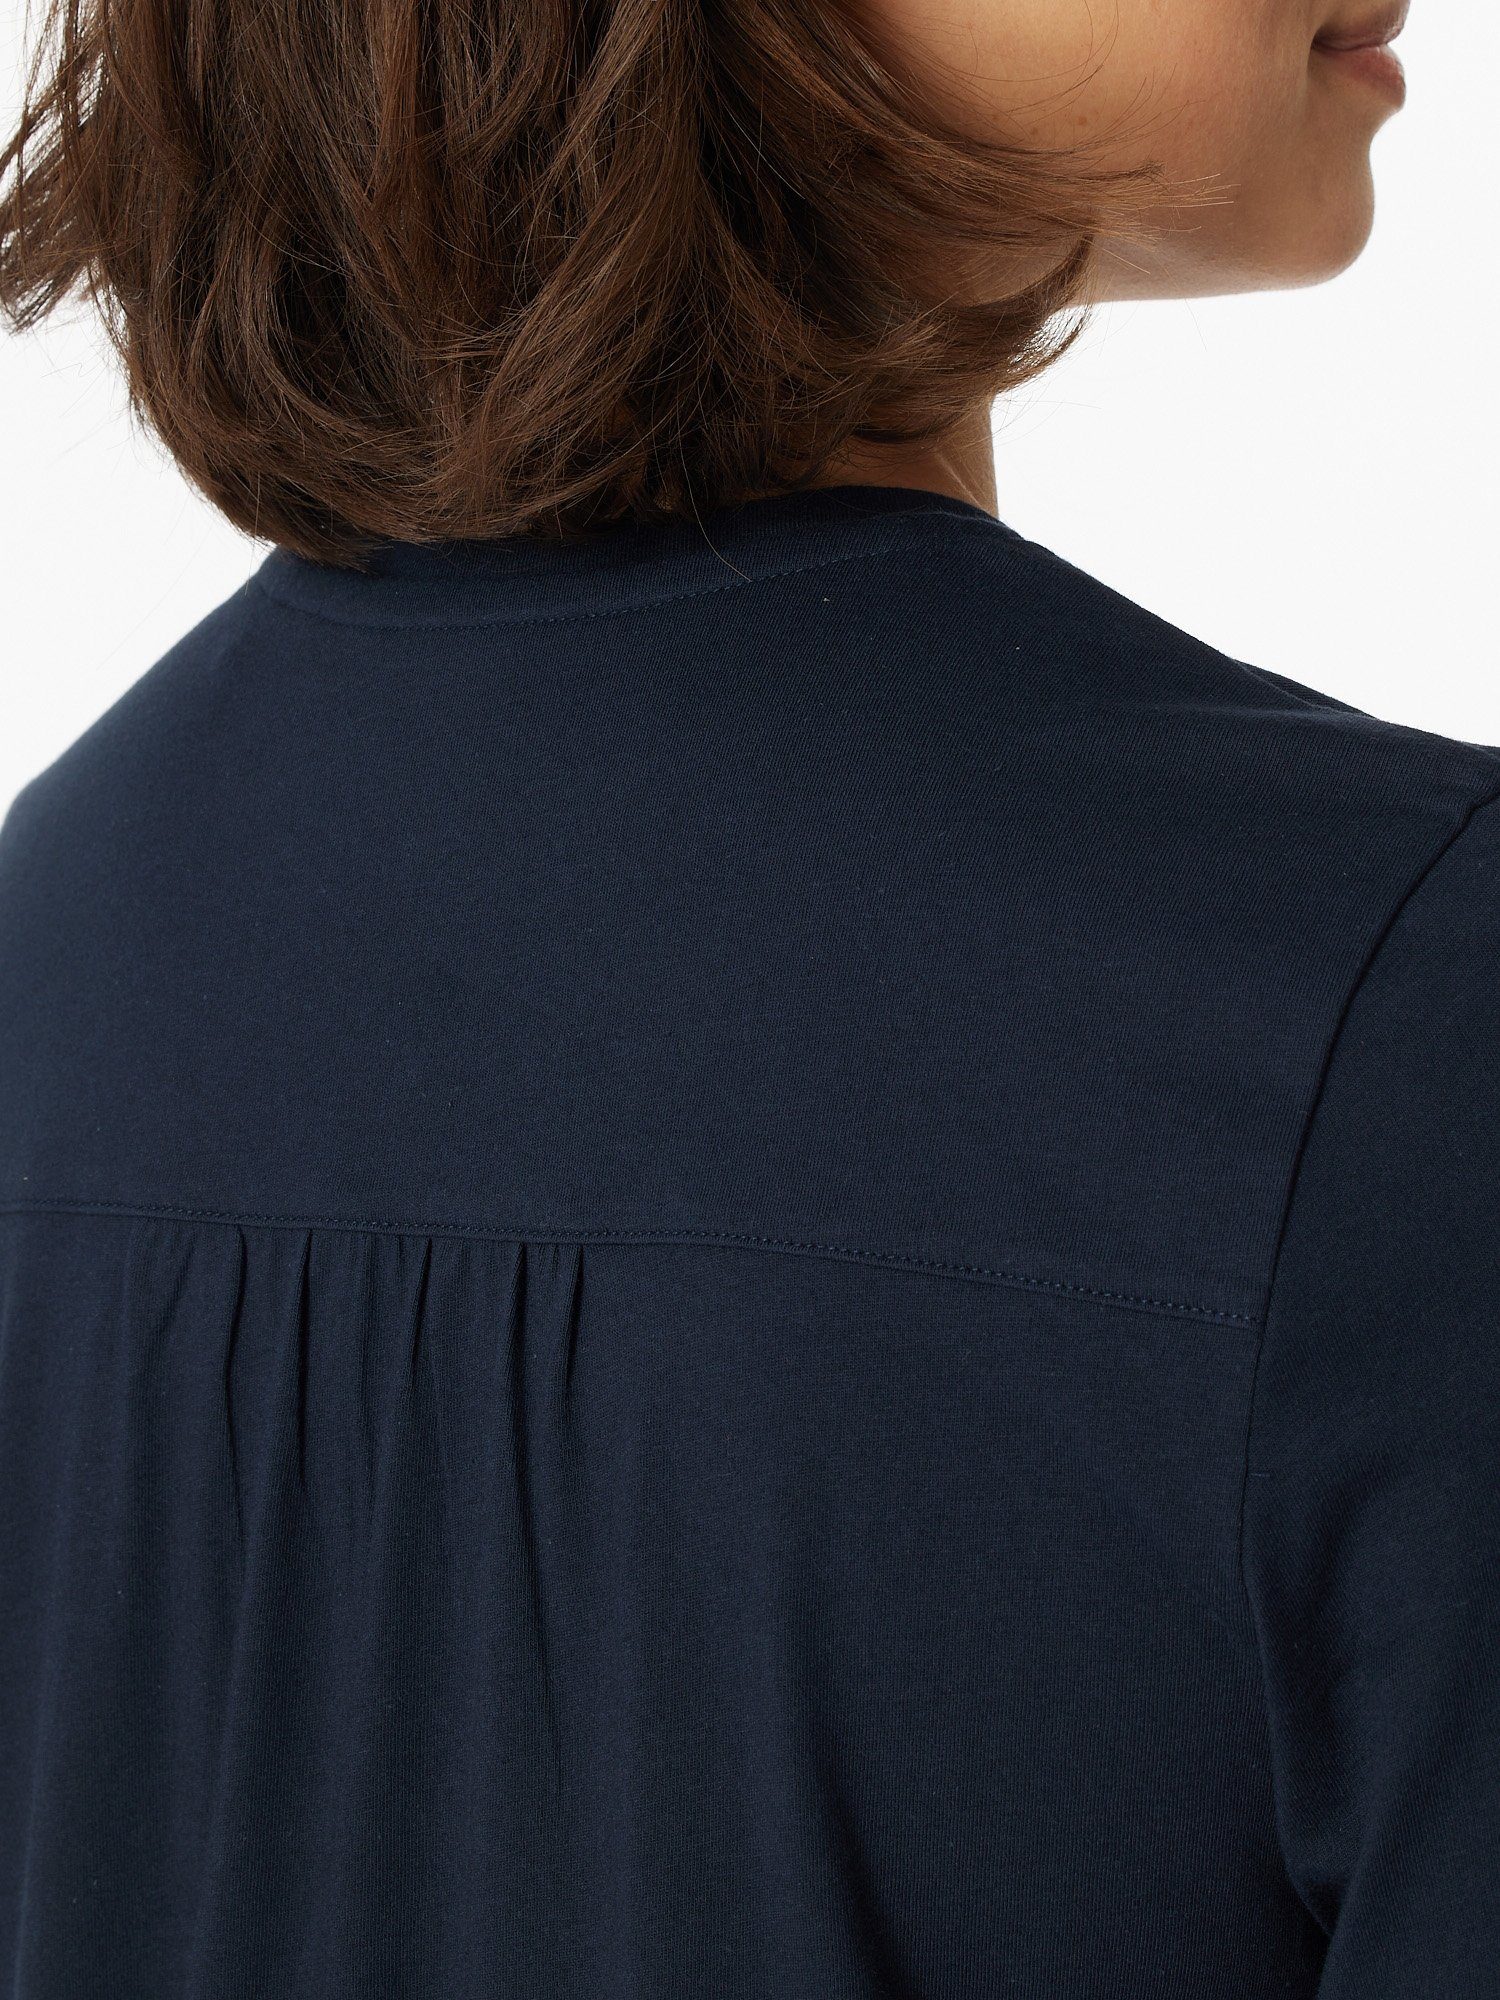 Schiesser Schlafanzug Comfort Essentials Damen nachtblau Frauen